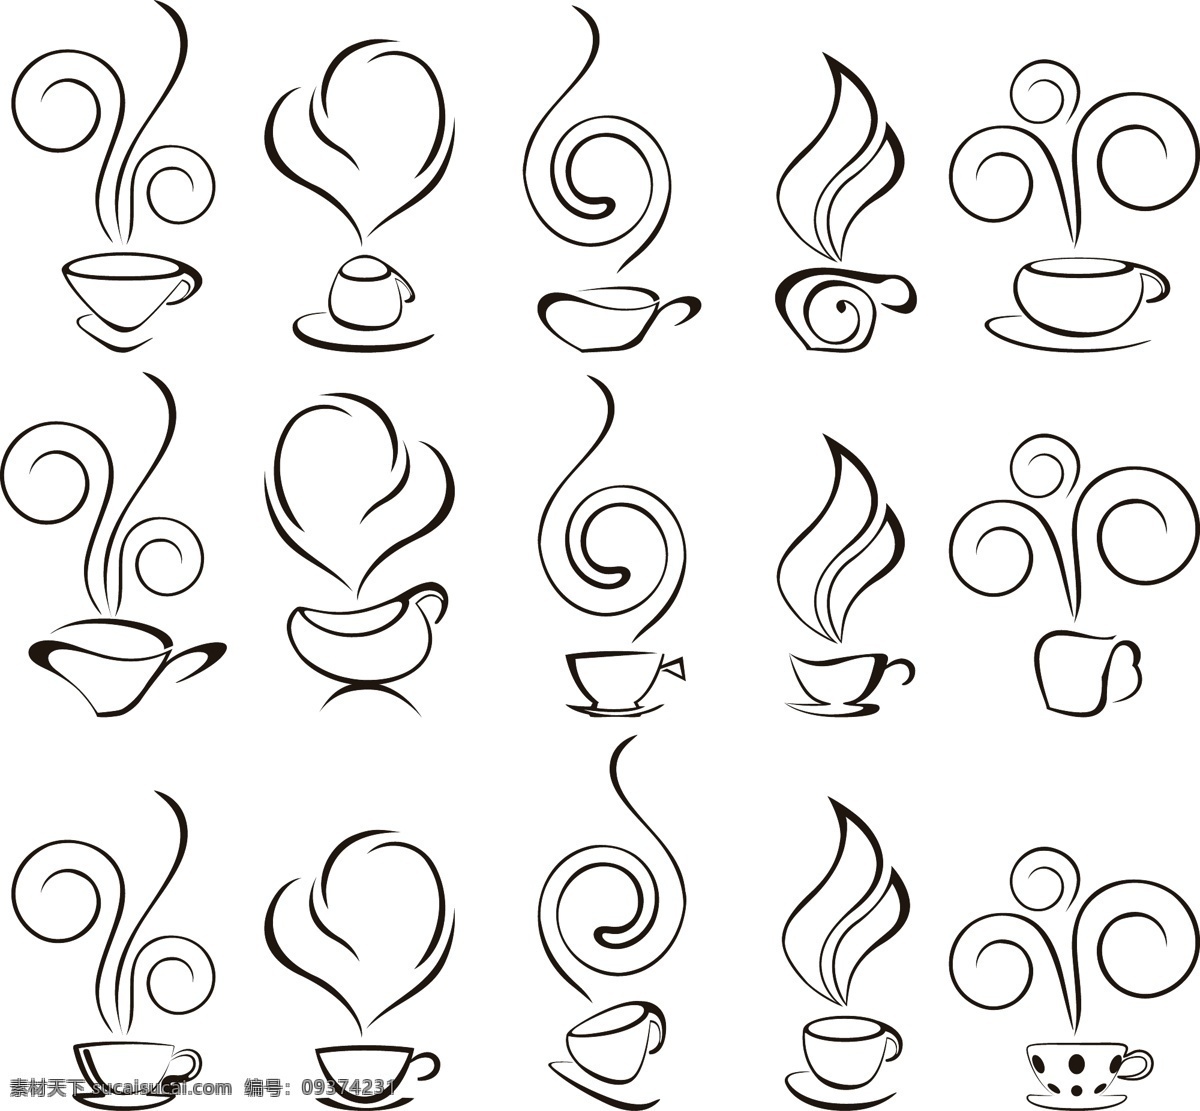 抽象 咖啡 图形 矢量 线 稿 咖啡杯 咖啡壶 矢量素材 饮料 饮品 矢量图 日常生活